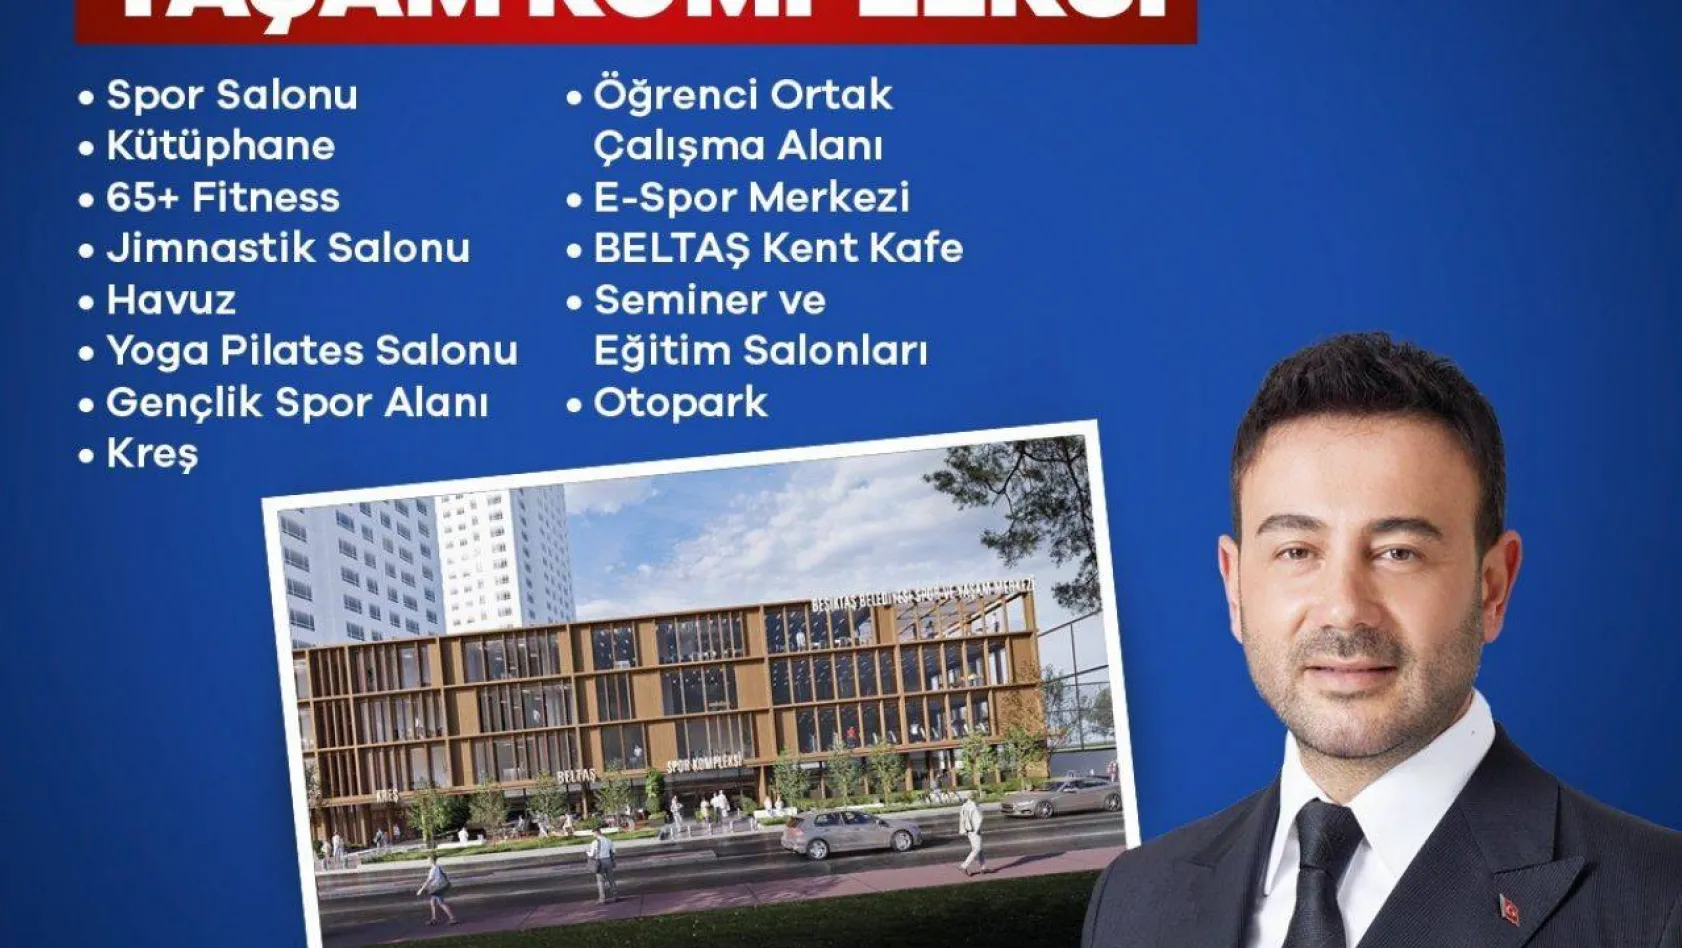 Beşiktaş Belediye Başkanı Akpolat'tan müjde: Yeni dönemde 'Dikilitaş Spor ve Yaşam Kompleksi' projesi